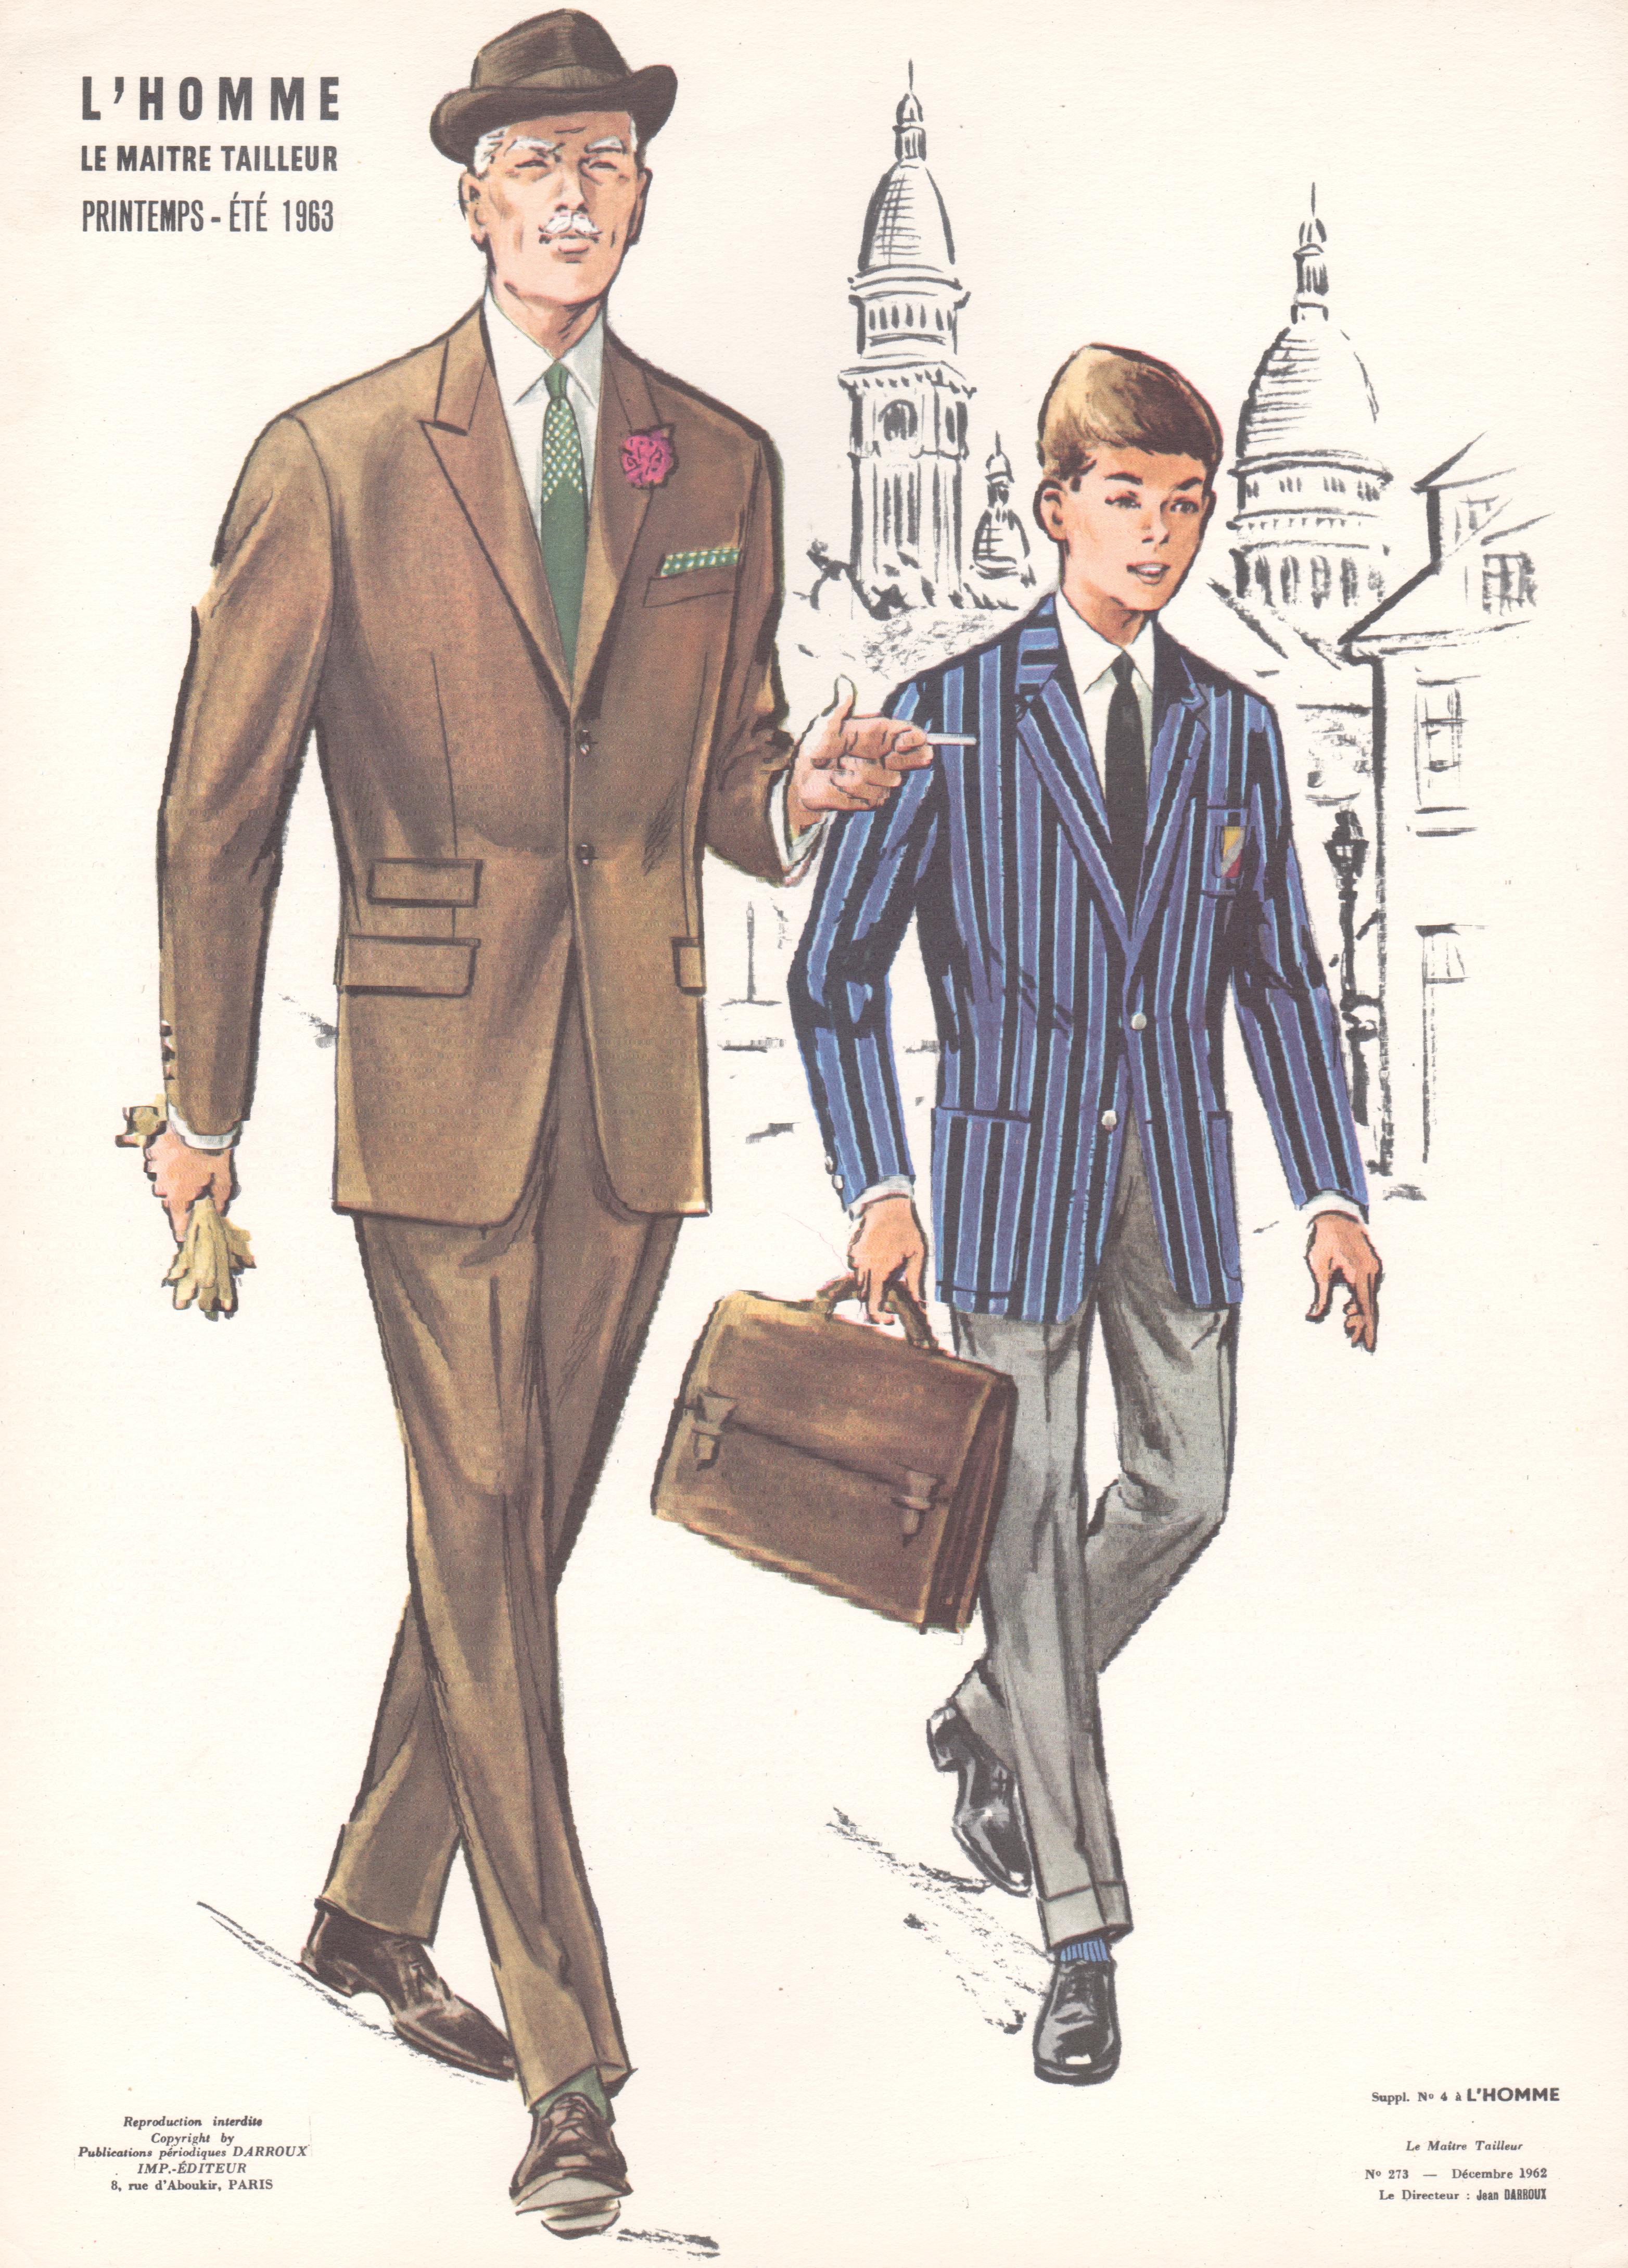 Lithographie de costume vintage pour homme du milieu du siècle dernier, design de mode et de style français, années 1960